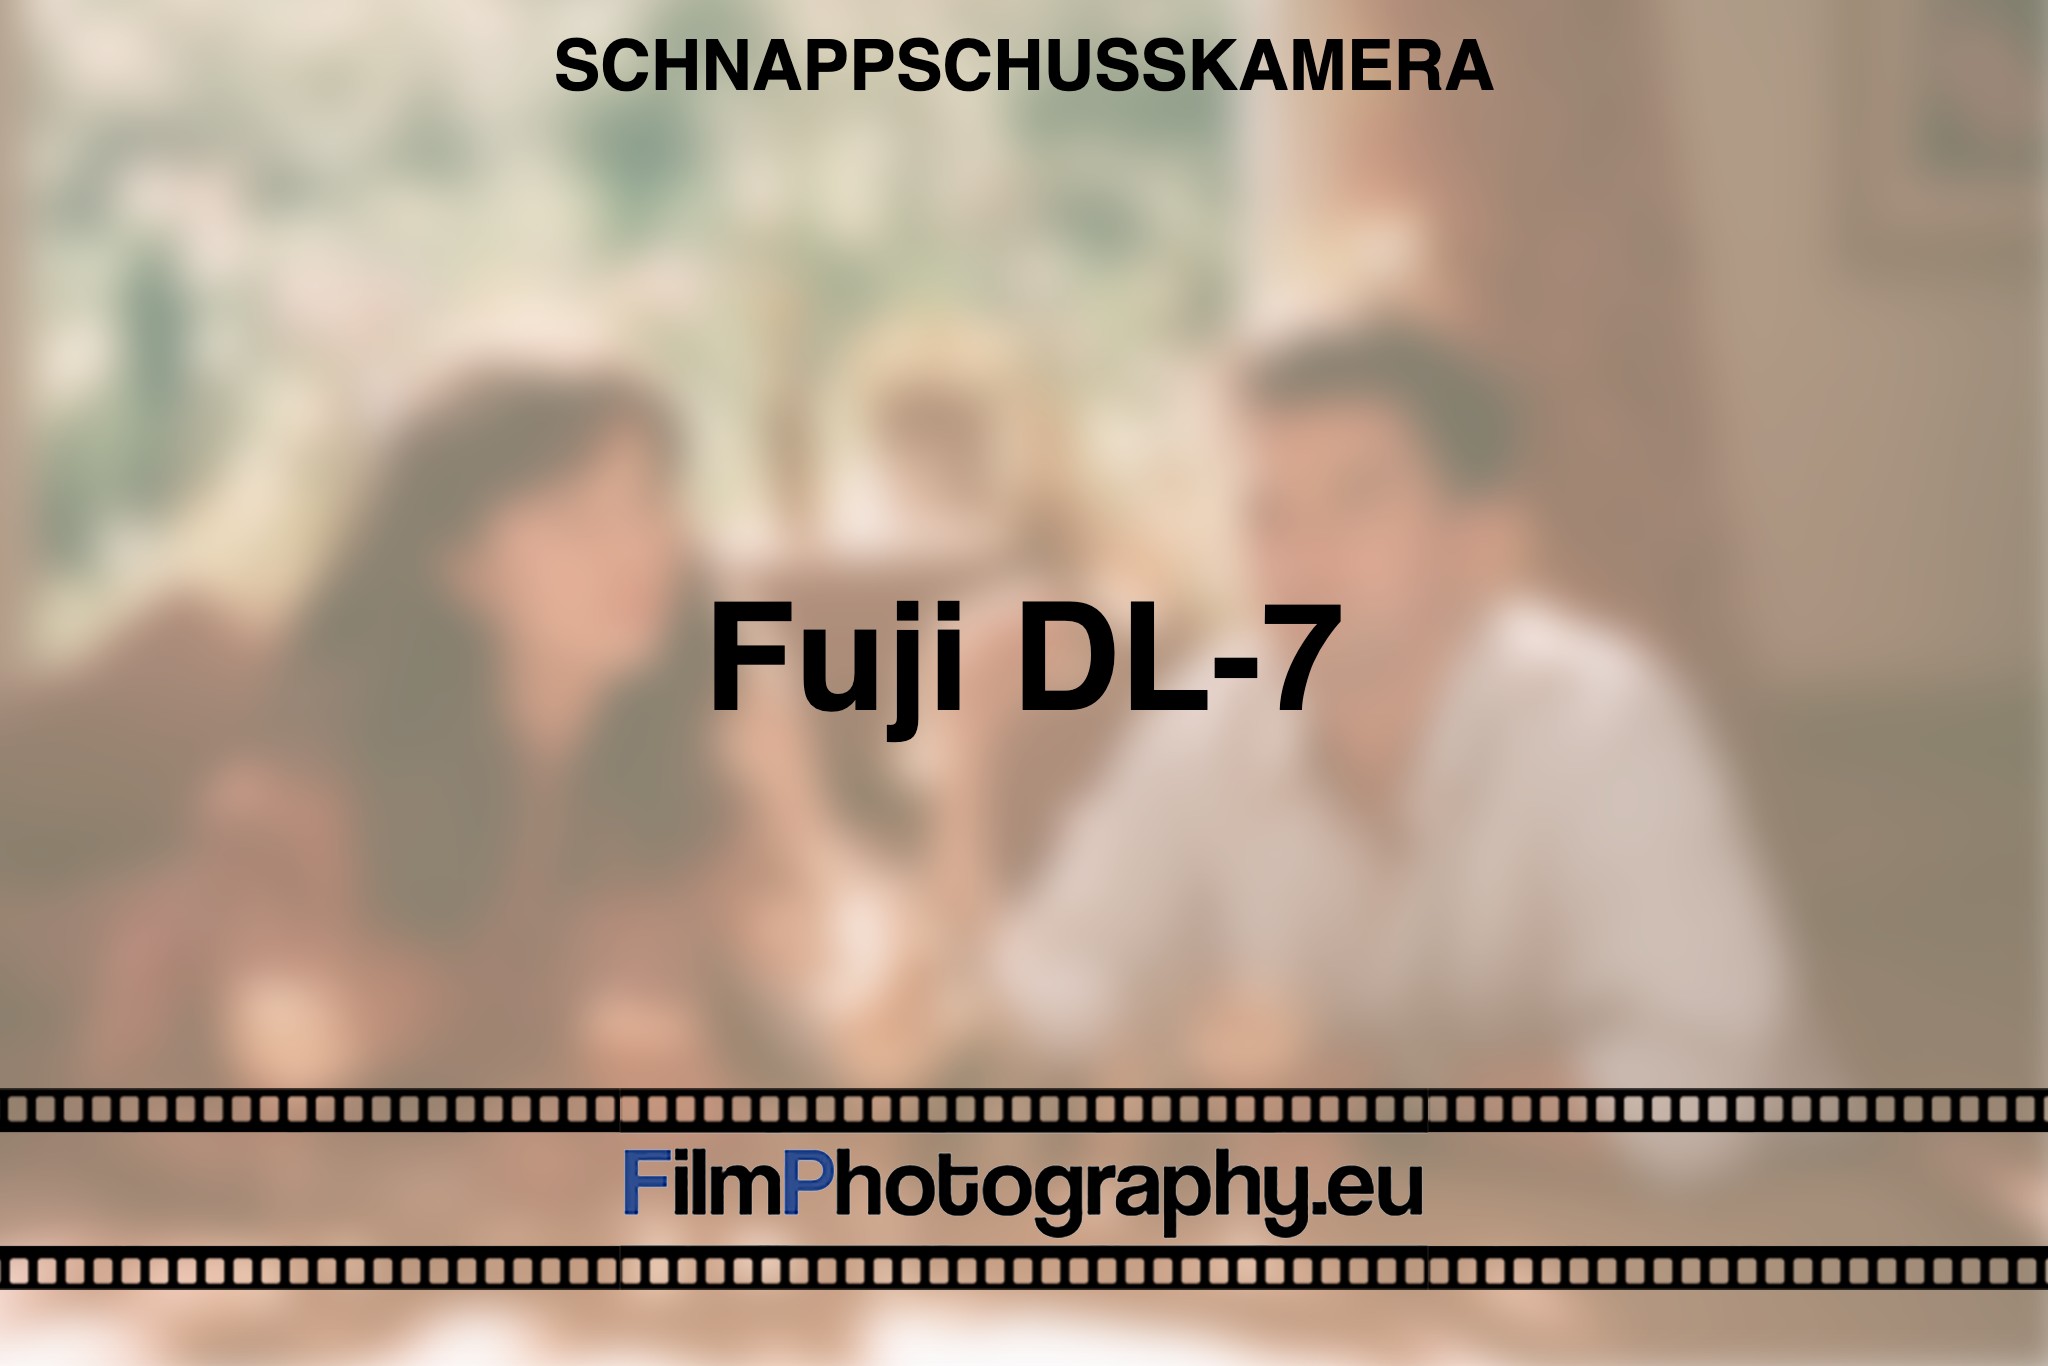 fuji-dl-7-schnappschusskamera-bnv